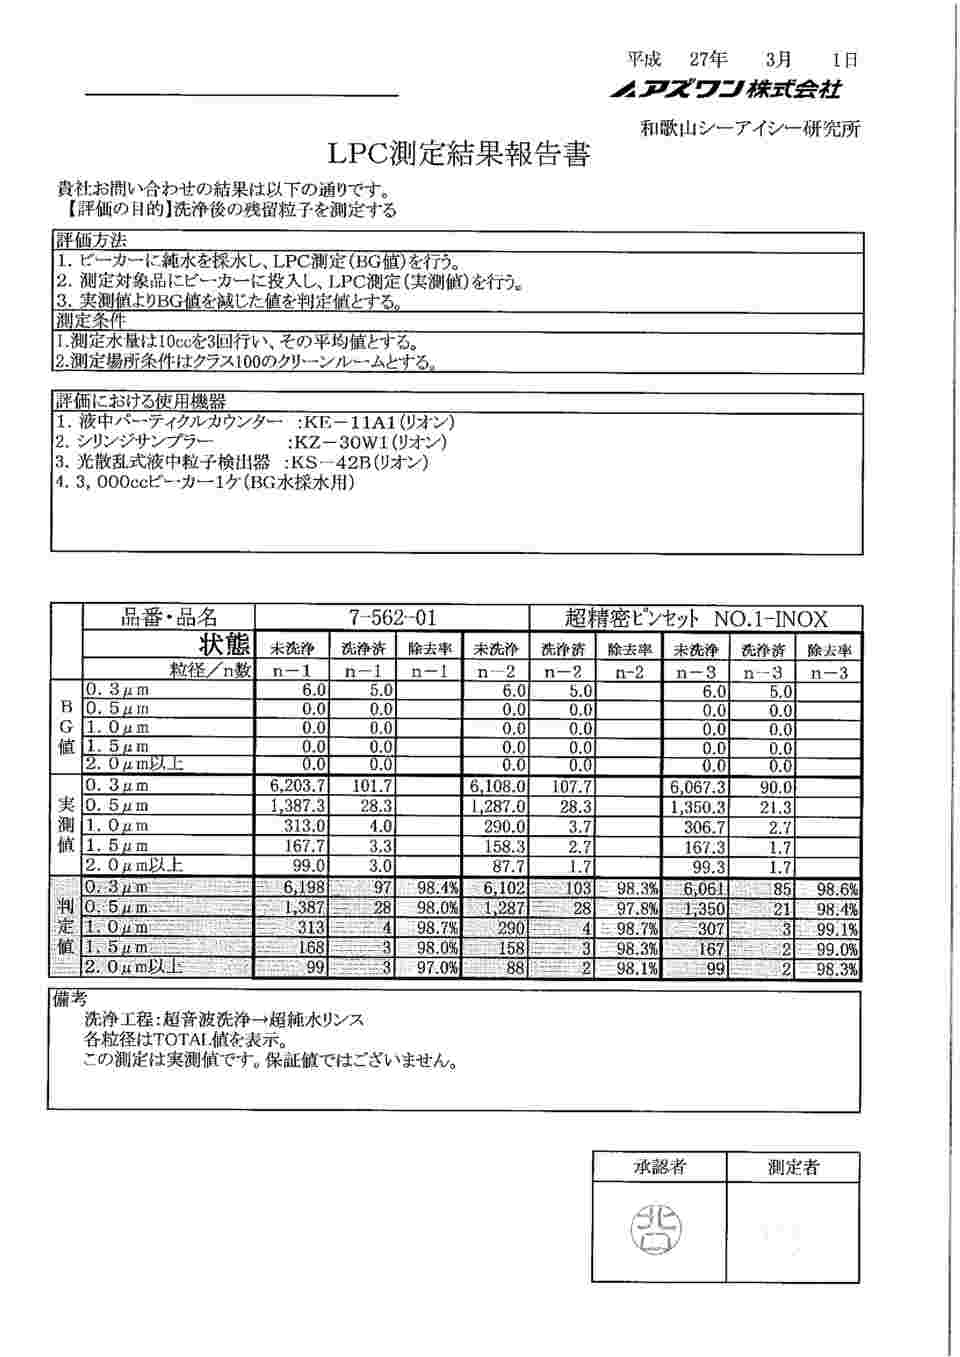 7-562-01 精密ピンセット No.1 極細 ステンレス NO.1-INOX 【AXEL